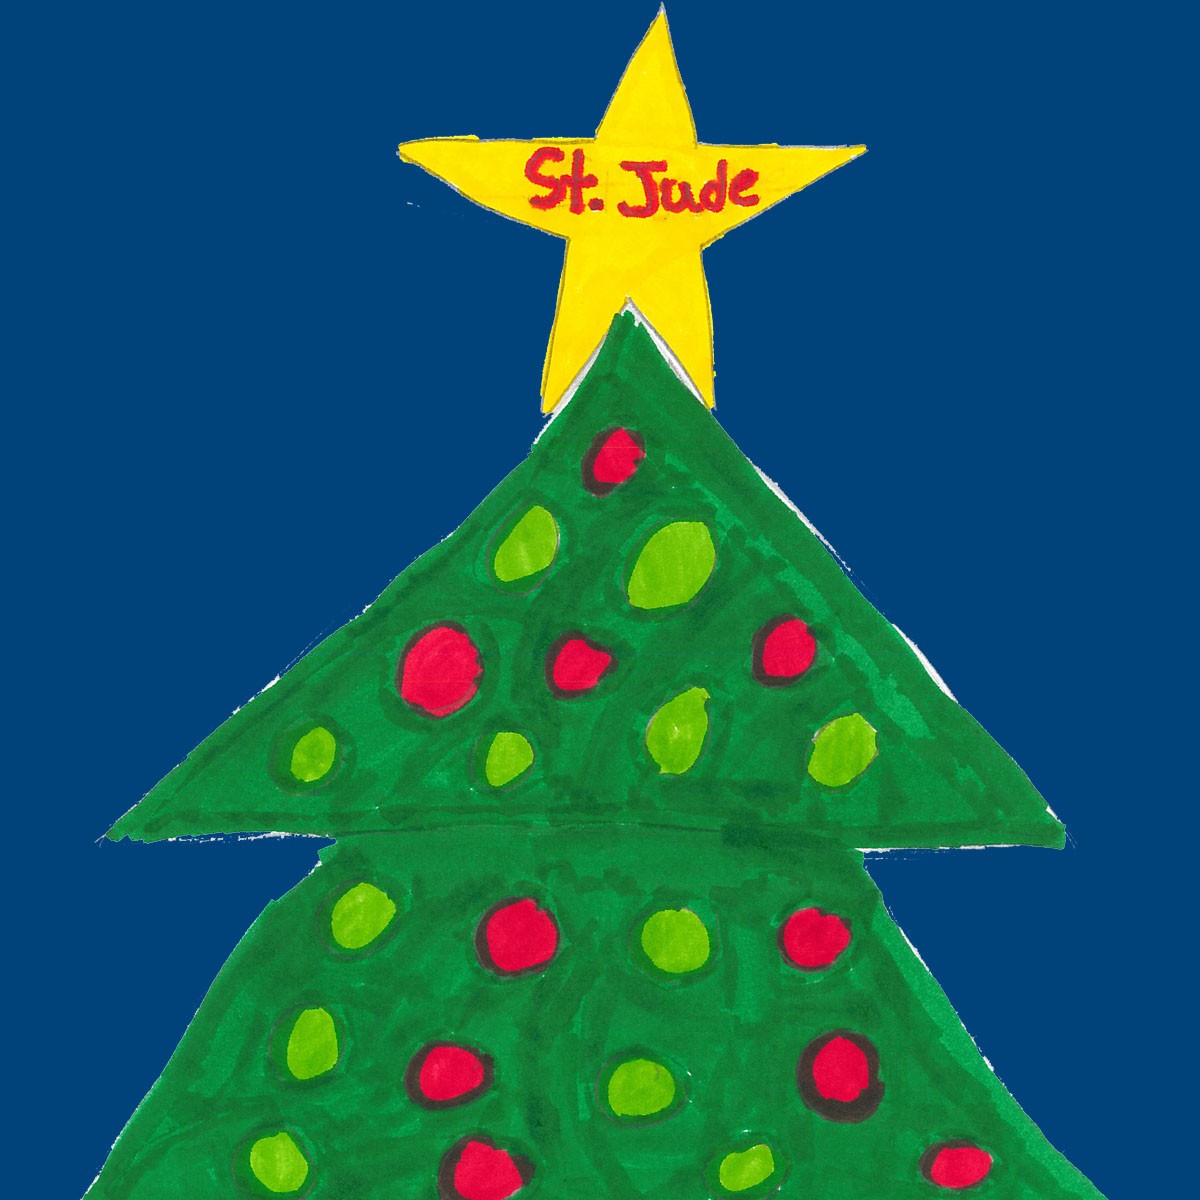 Pintura de un árbol navideño, con una brillante estrella que dice “St. Jude” en su centro.